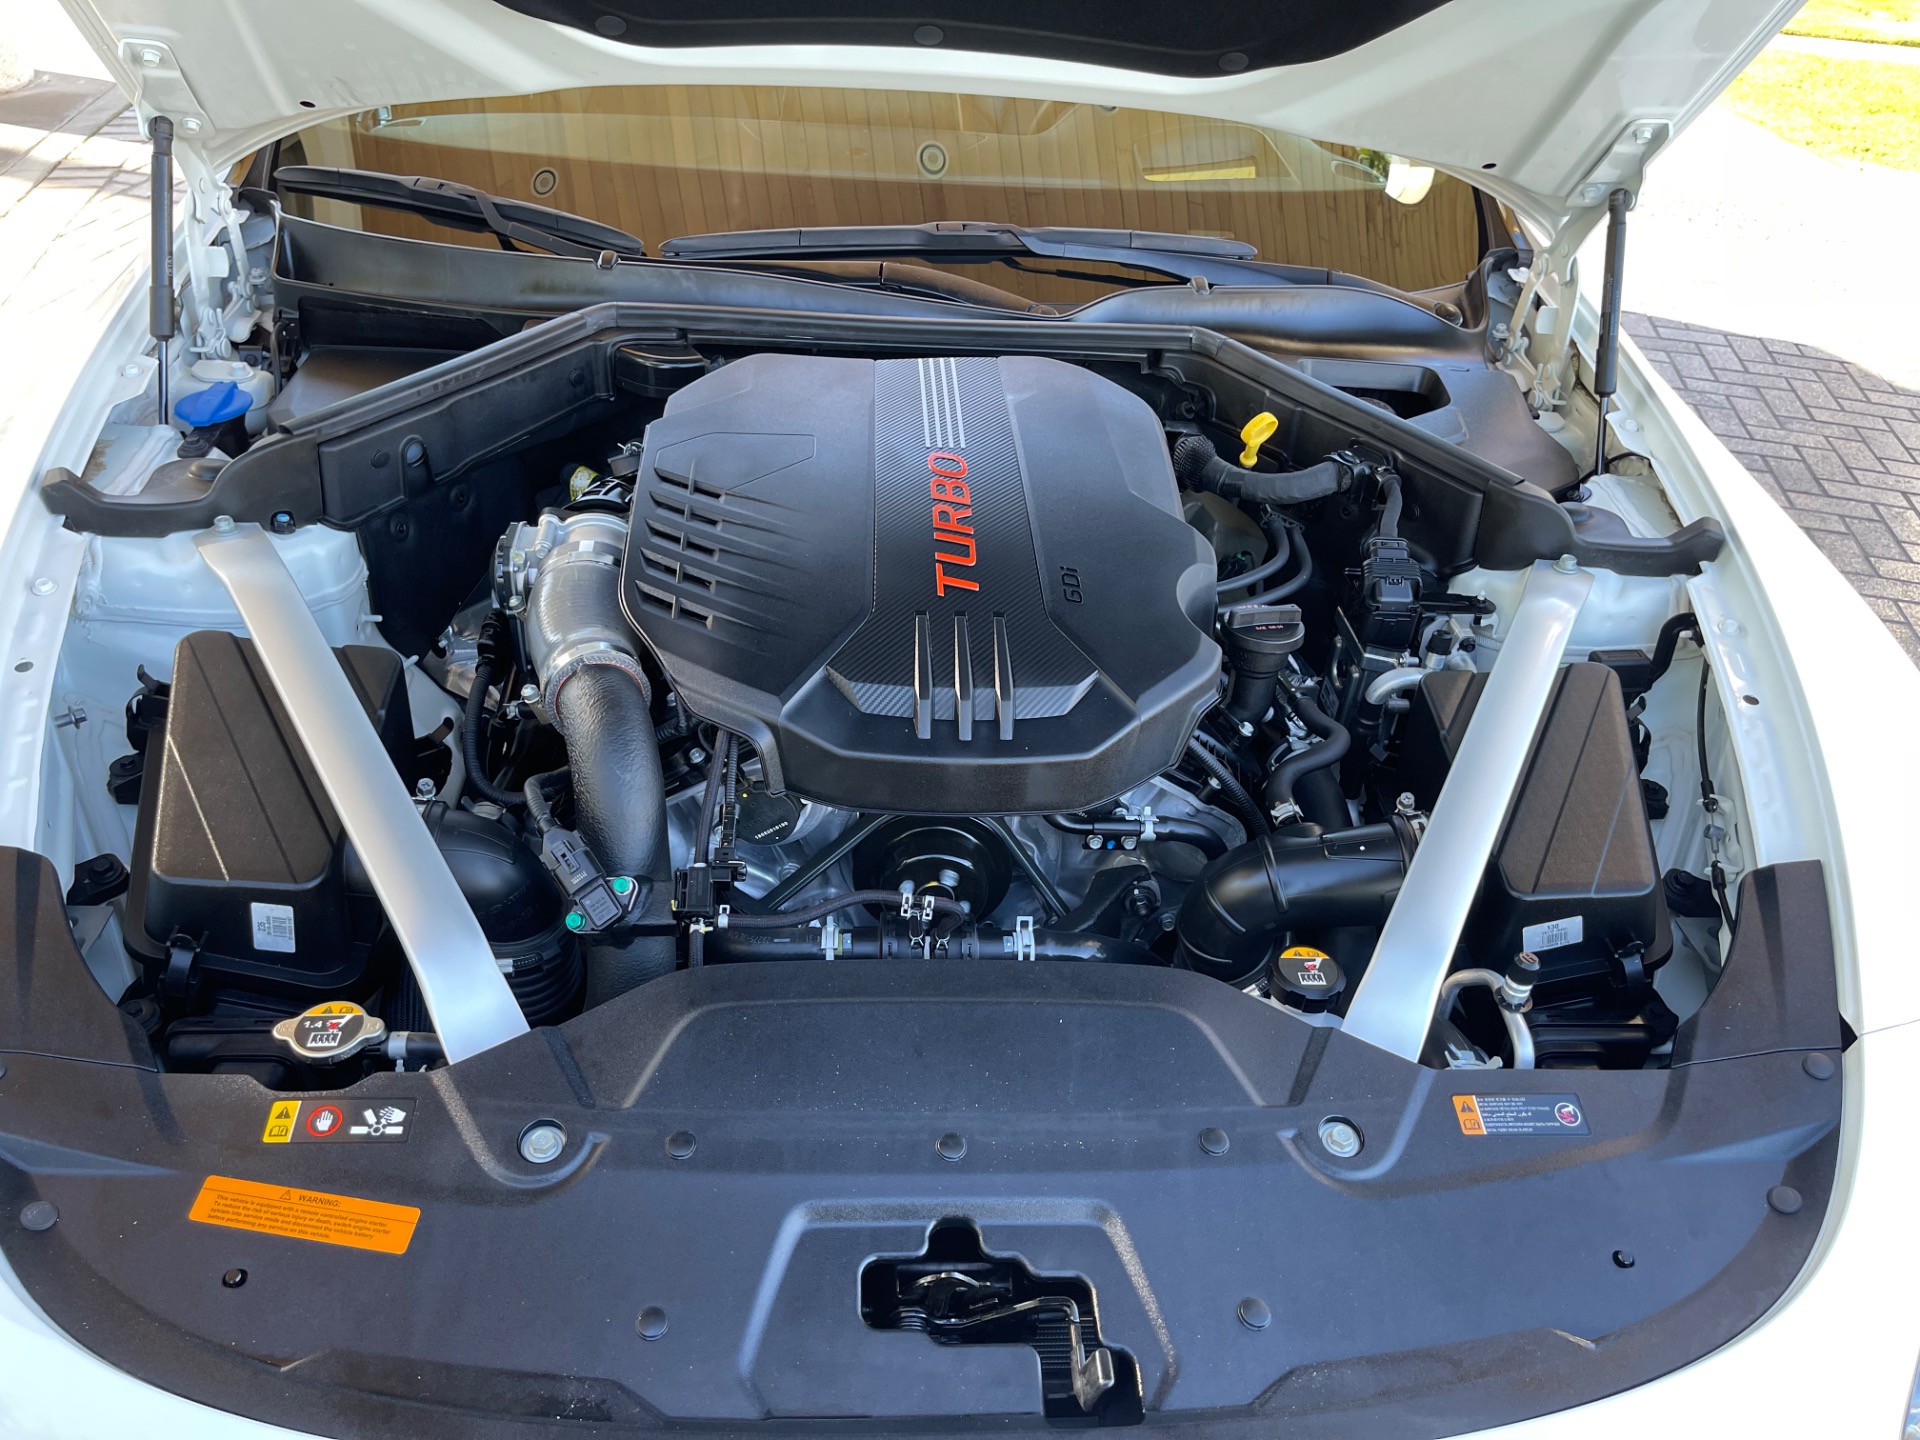 New-2019-Kia-Stinger-GT2